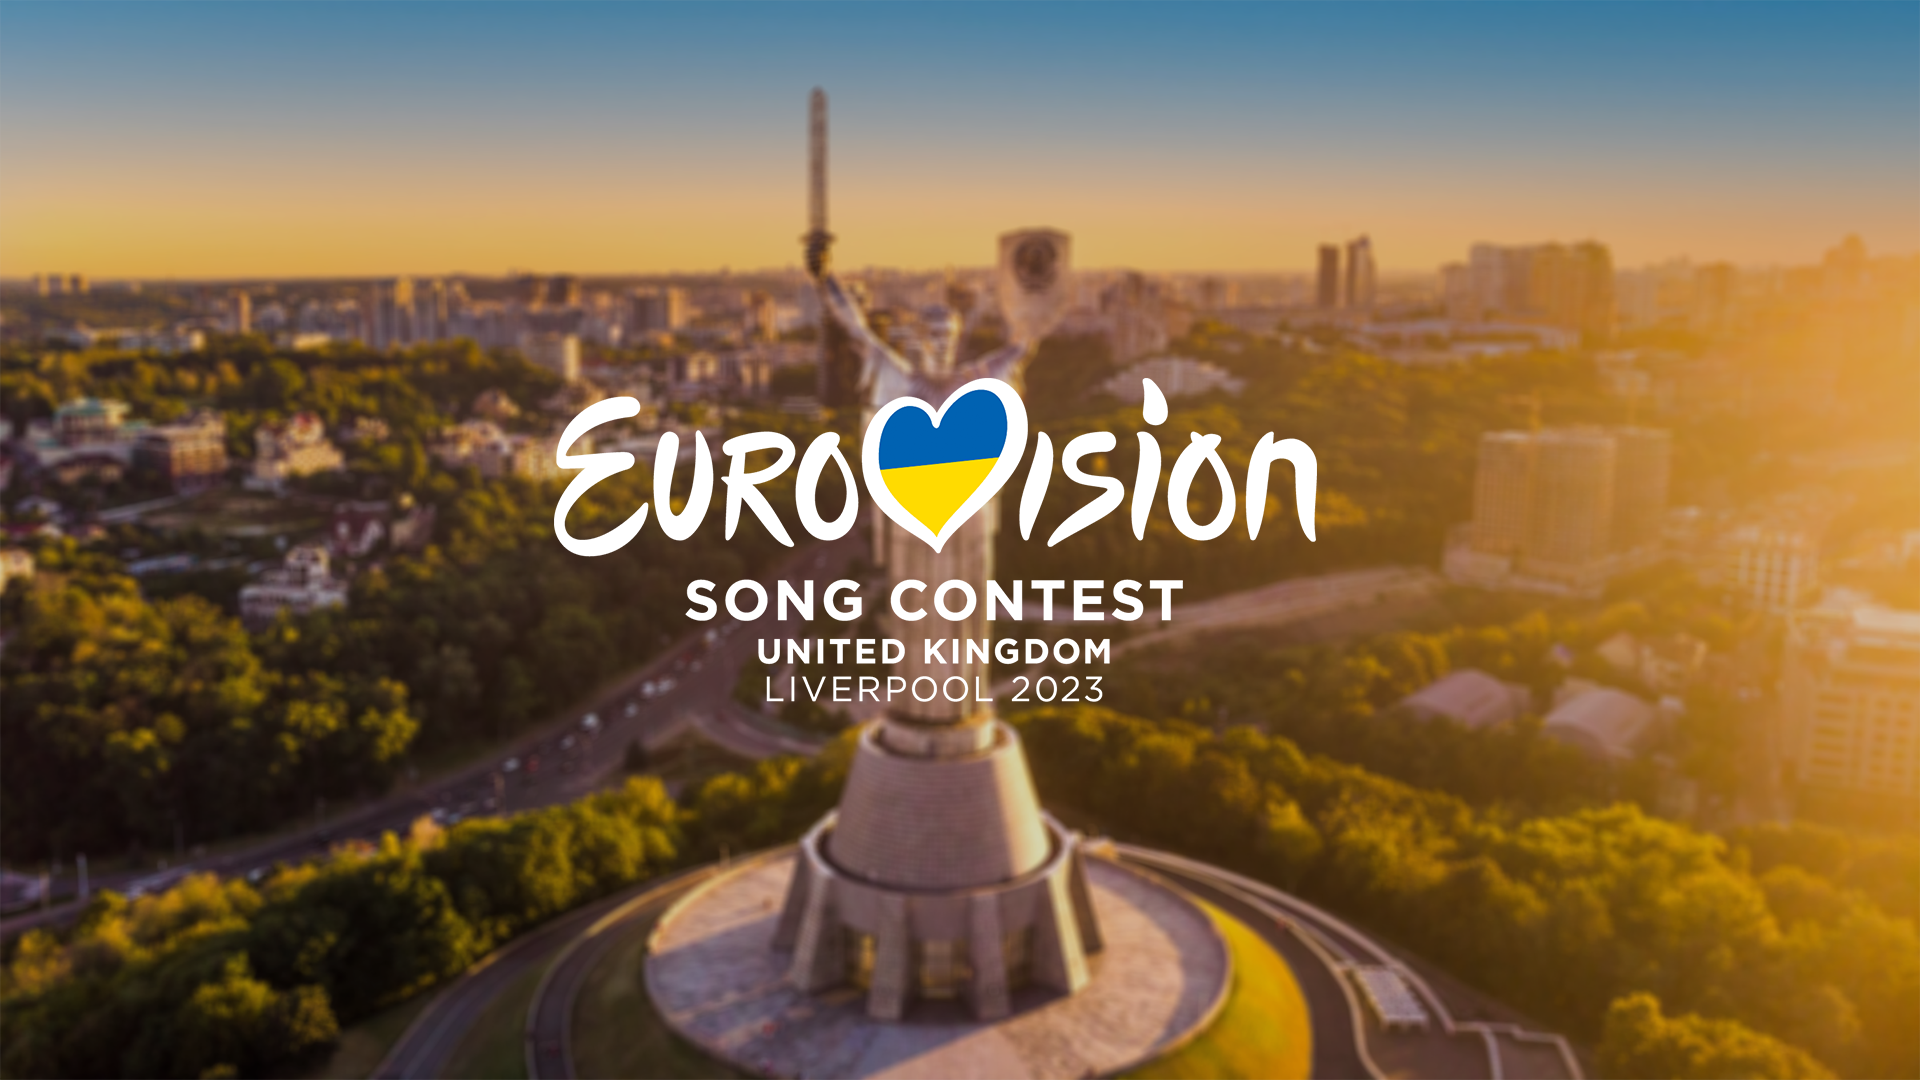 La BBC graba las postales de Eurovisión 2023 en 111 localizaciones diferentes uniendo a Reino Unido, Ucrania y cada país participante